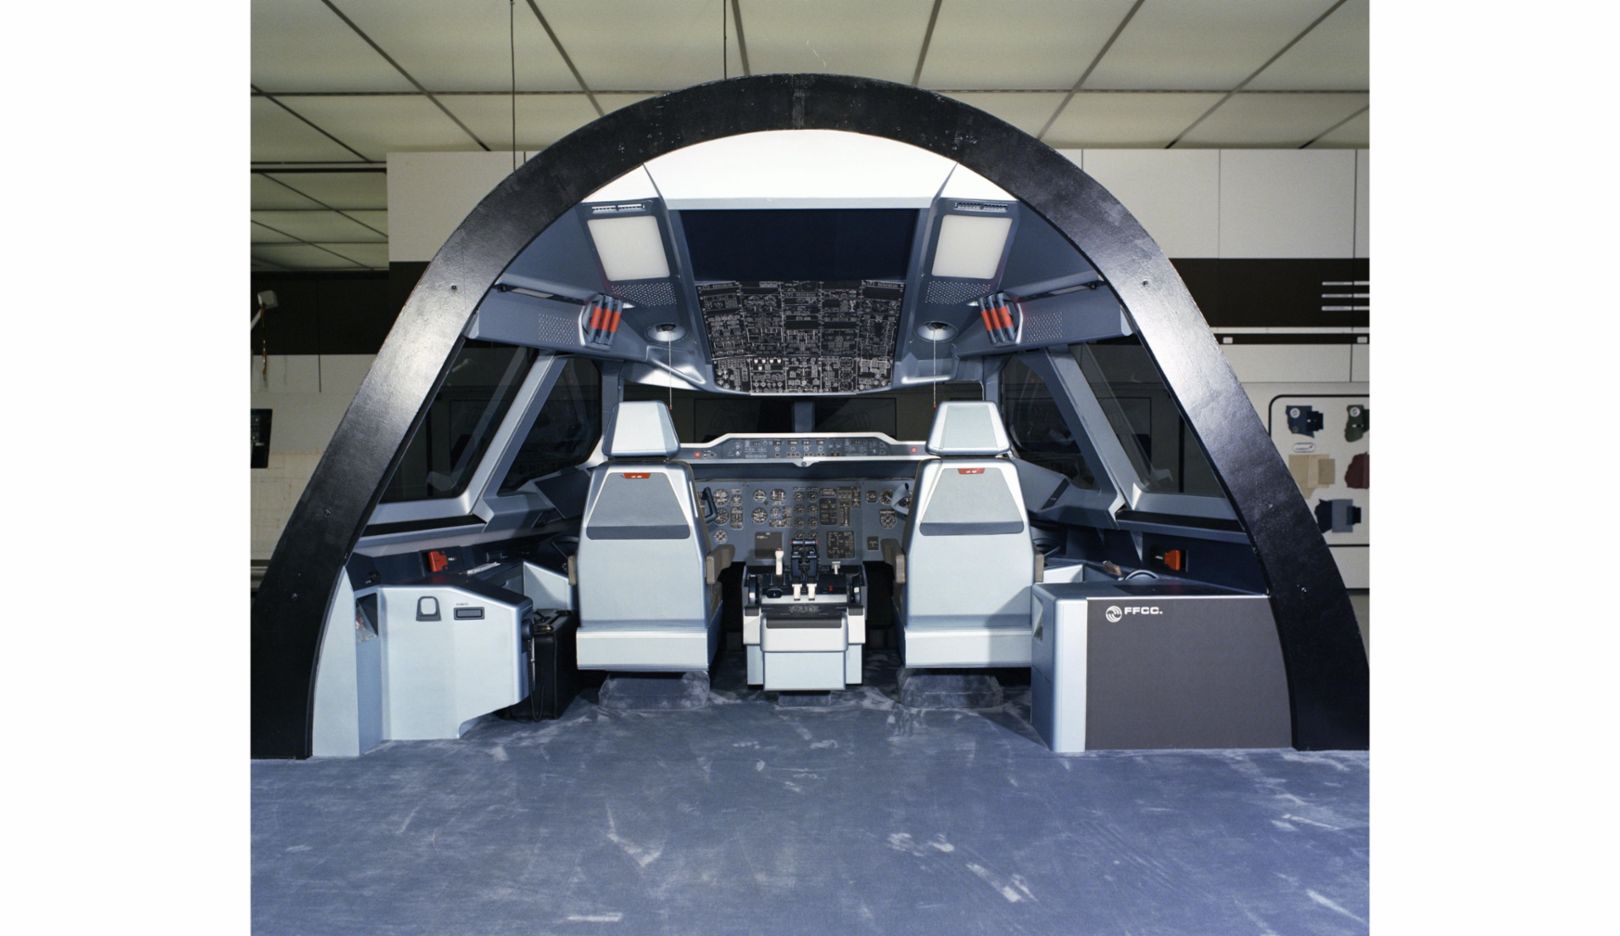 1981 – Cockpit für Airbus-Jets: Zusammen mit dem Flugzeughersteller wird das Cockpitlayout der Zukunft für Großraumflugzeuge entwickelt. Erstmals kommen Monitore anstelle von Analoginstrumenten zum Einsatz.